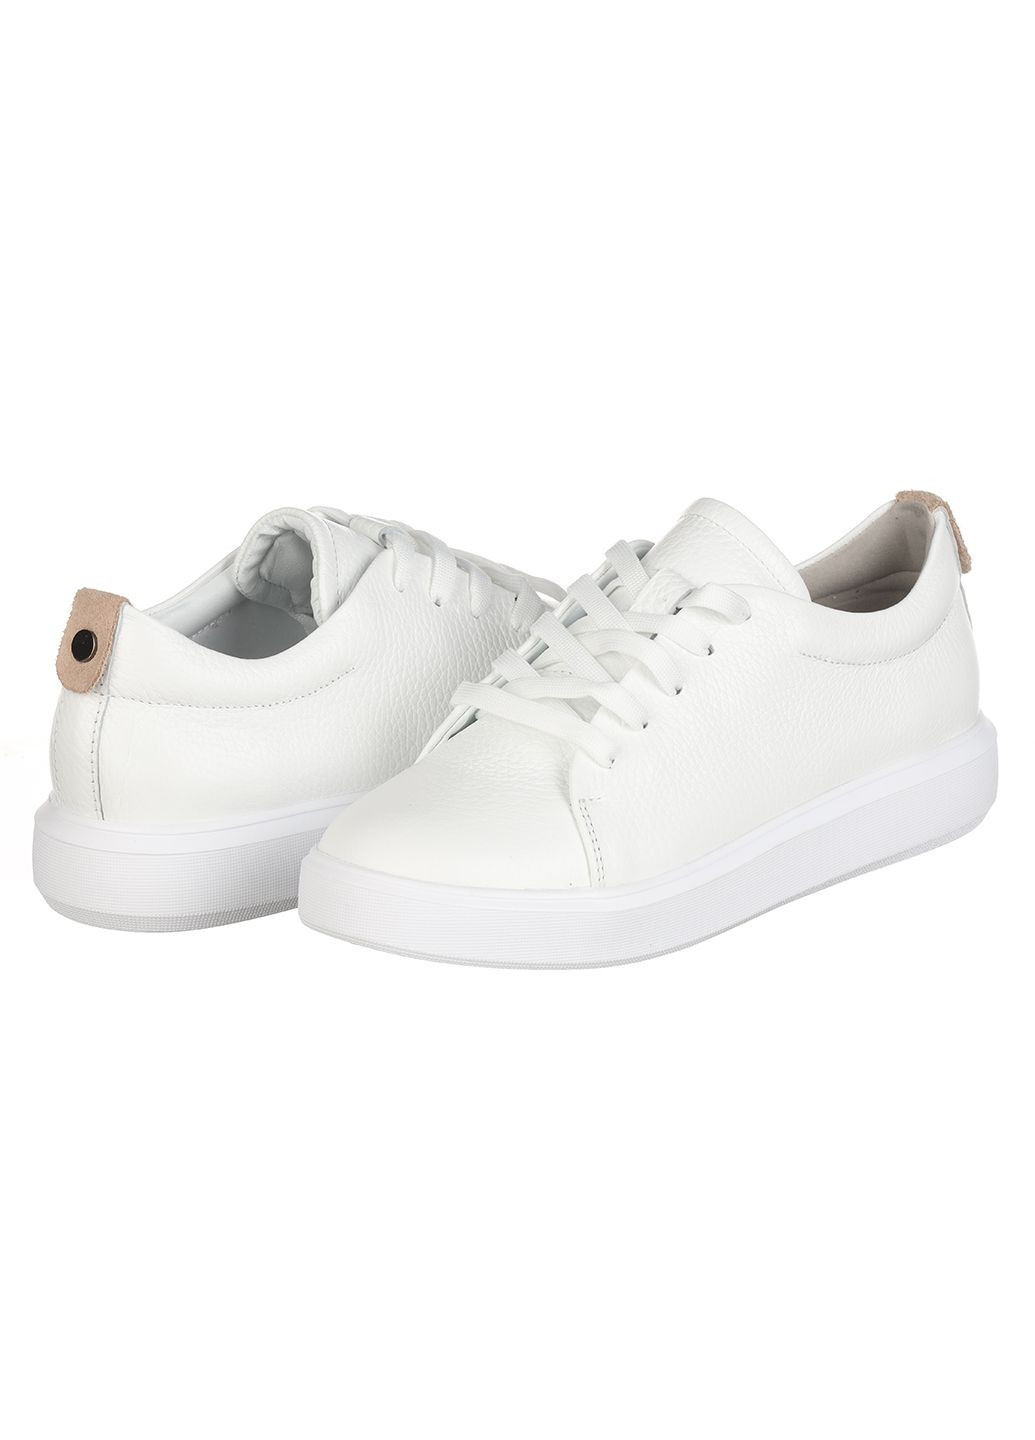 Белые демисезонные женские кроссовки из кожи 0131-2314 Rispetto